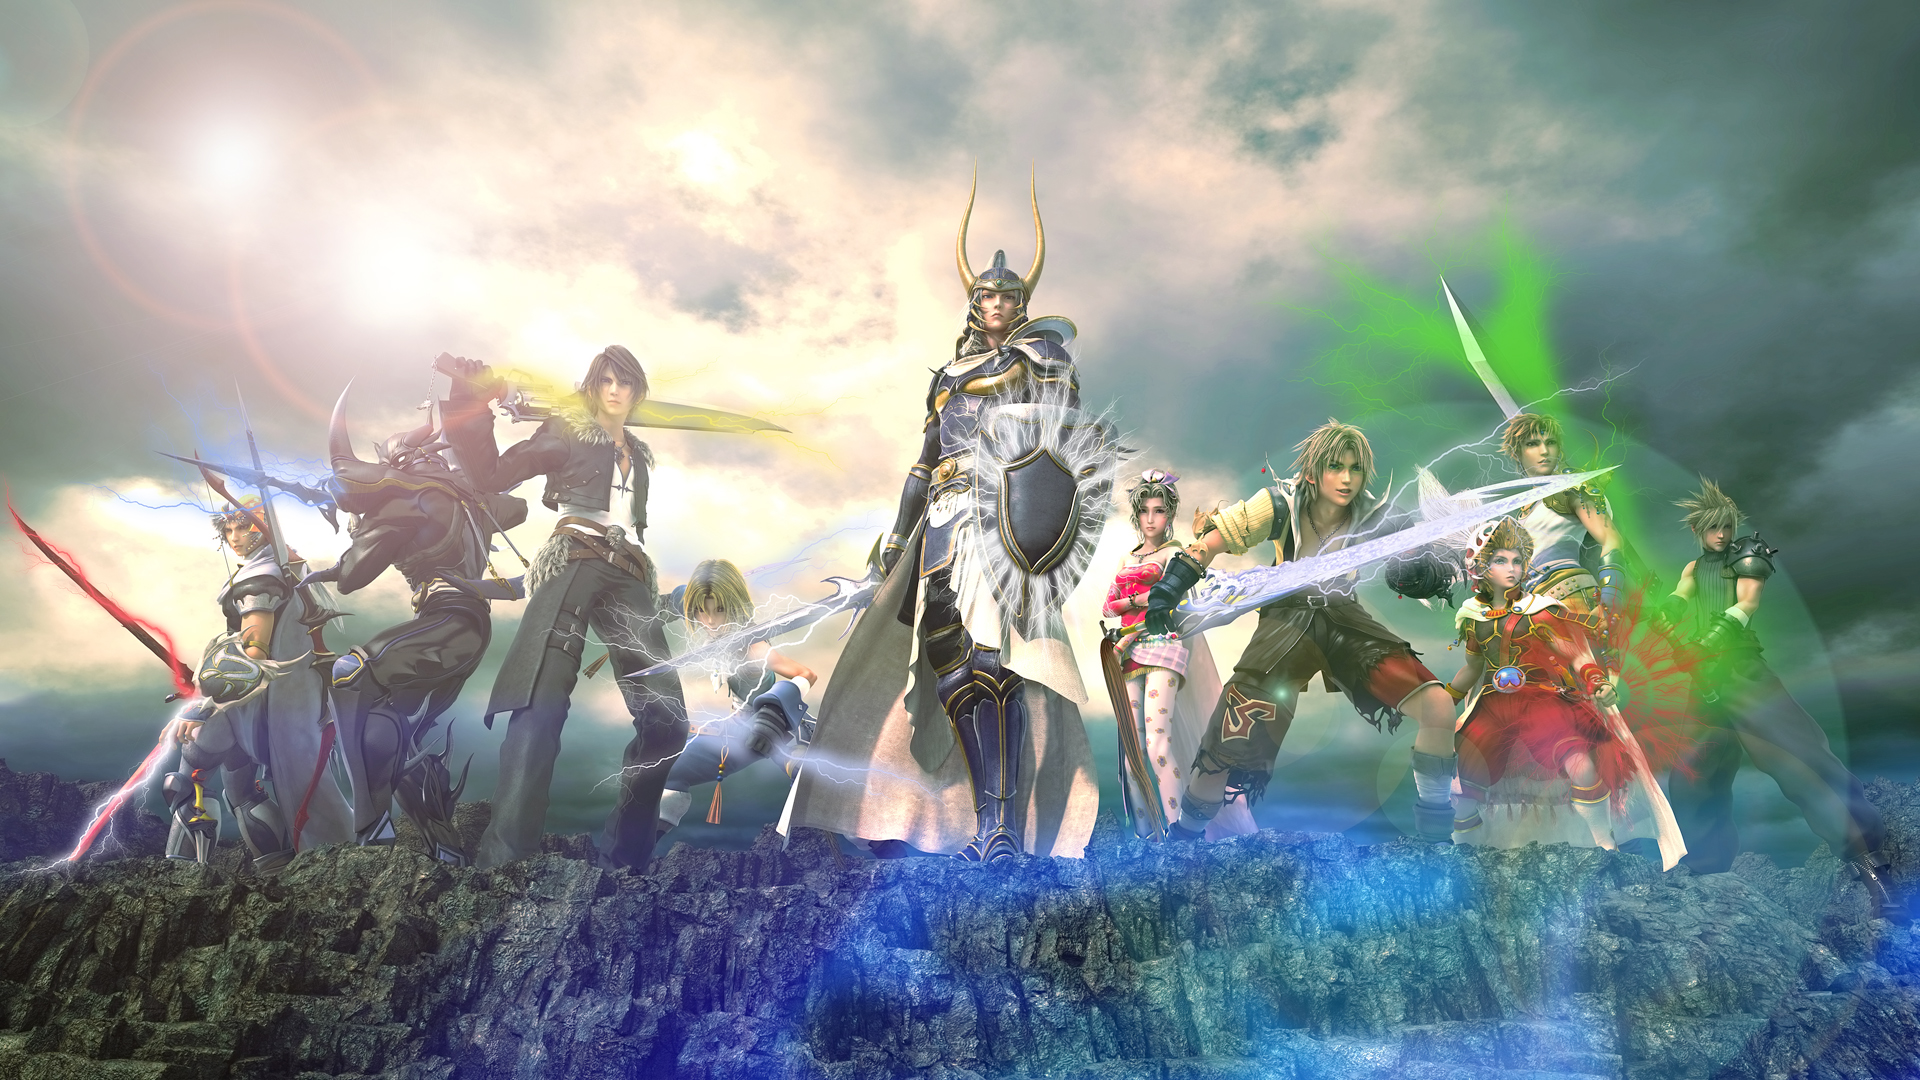 ファイナルファンタジー Final Fantasy Ff のヒーロー 男性メインキャラクターまとめ 4 4 Renote リノート